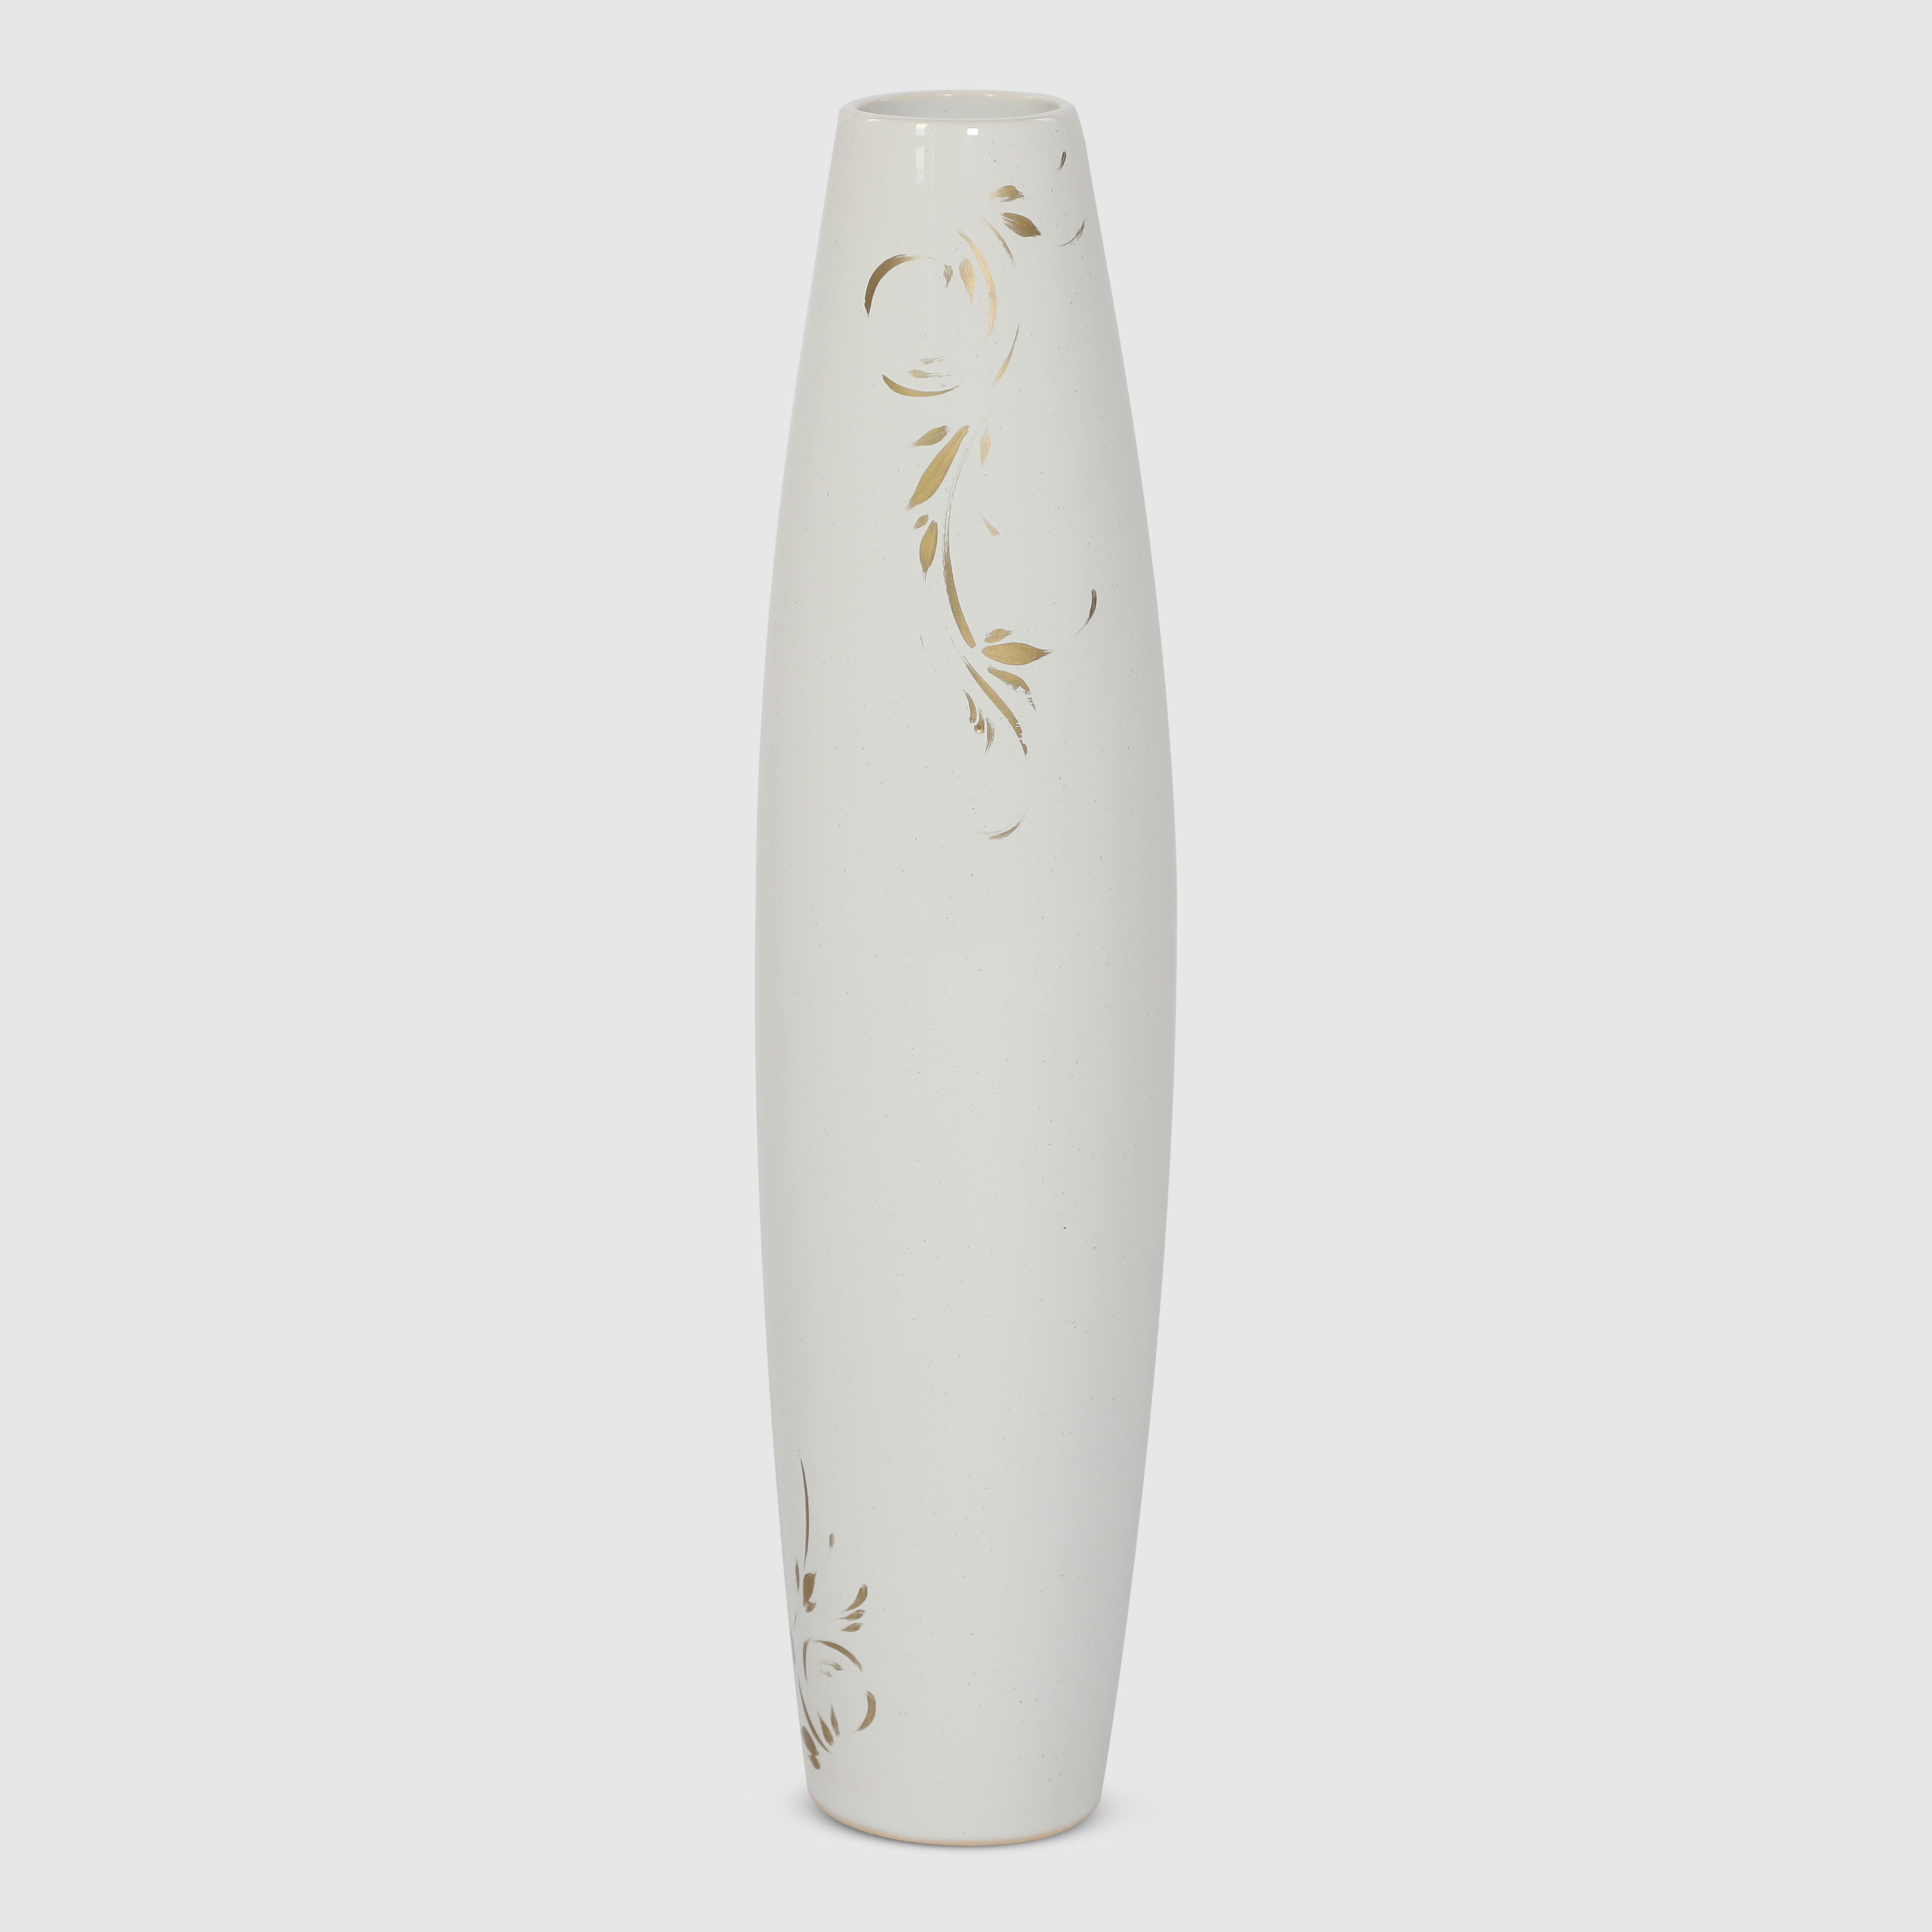 ваза san miguel montana золотистый 20 см Ваза керамическая Porc-сeramic амелия 47 см